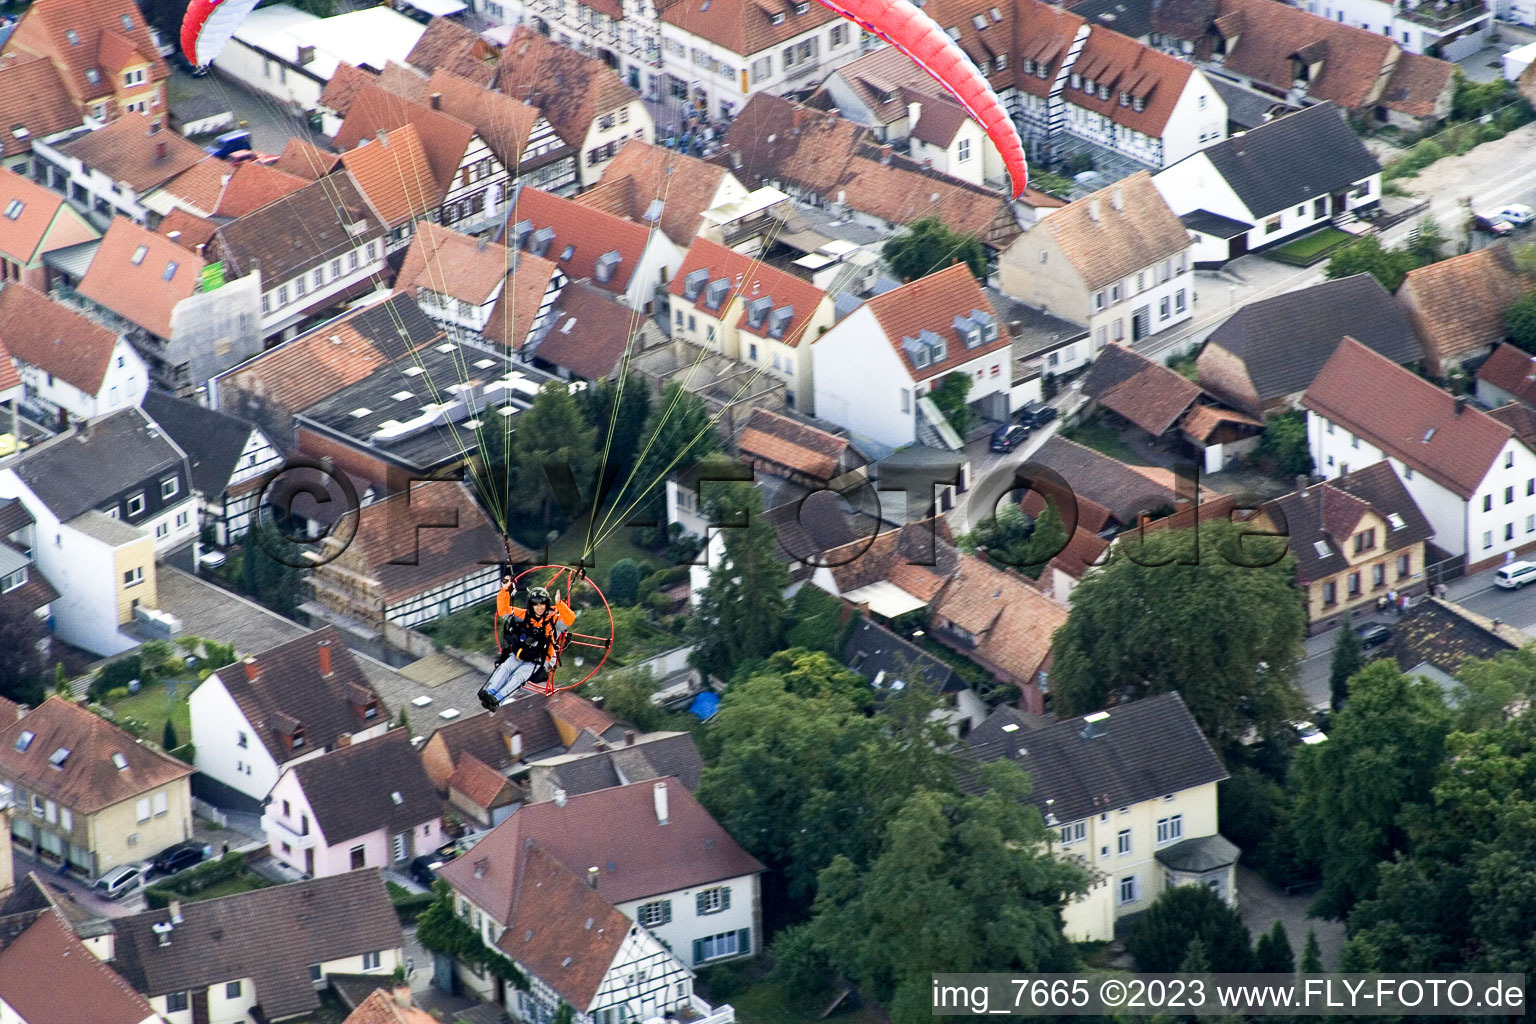 Vue aérienne de Fête de la ville à Kandel dans le département Rhénanie-Palatinat, Allemagne